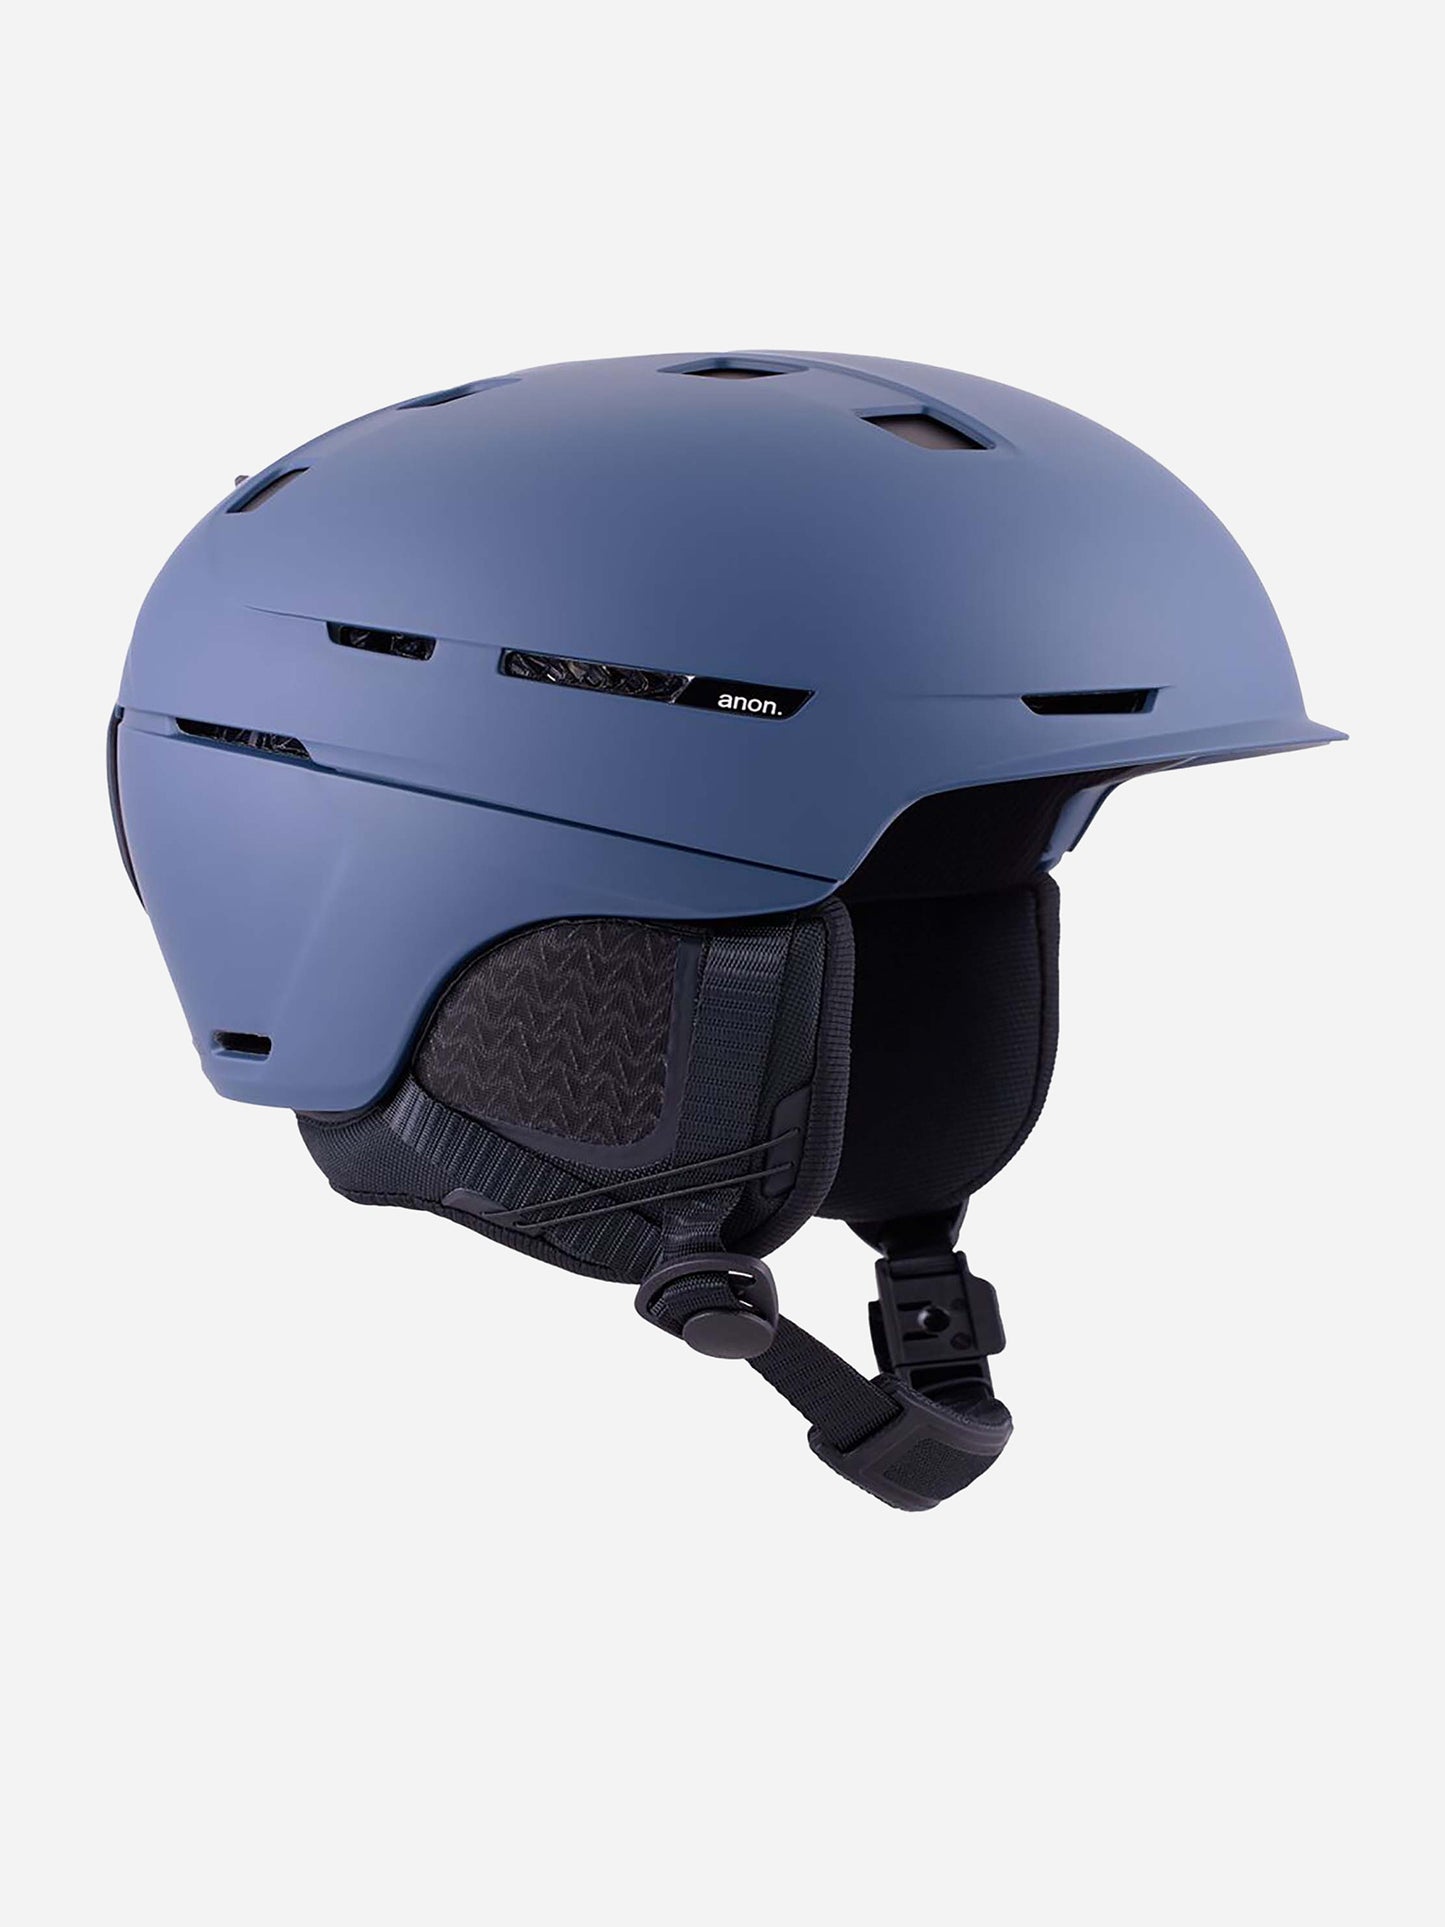 Anon Merak WaveCel Ski/Snowboard Helmet